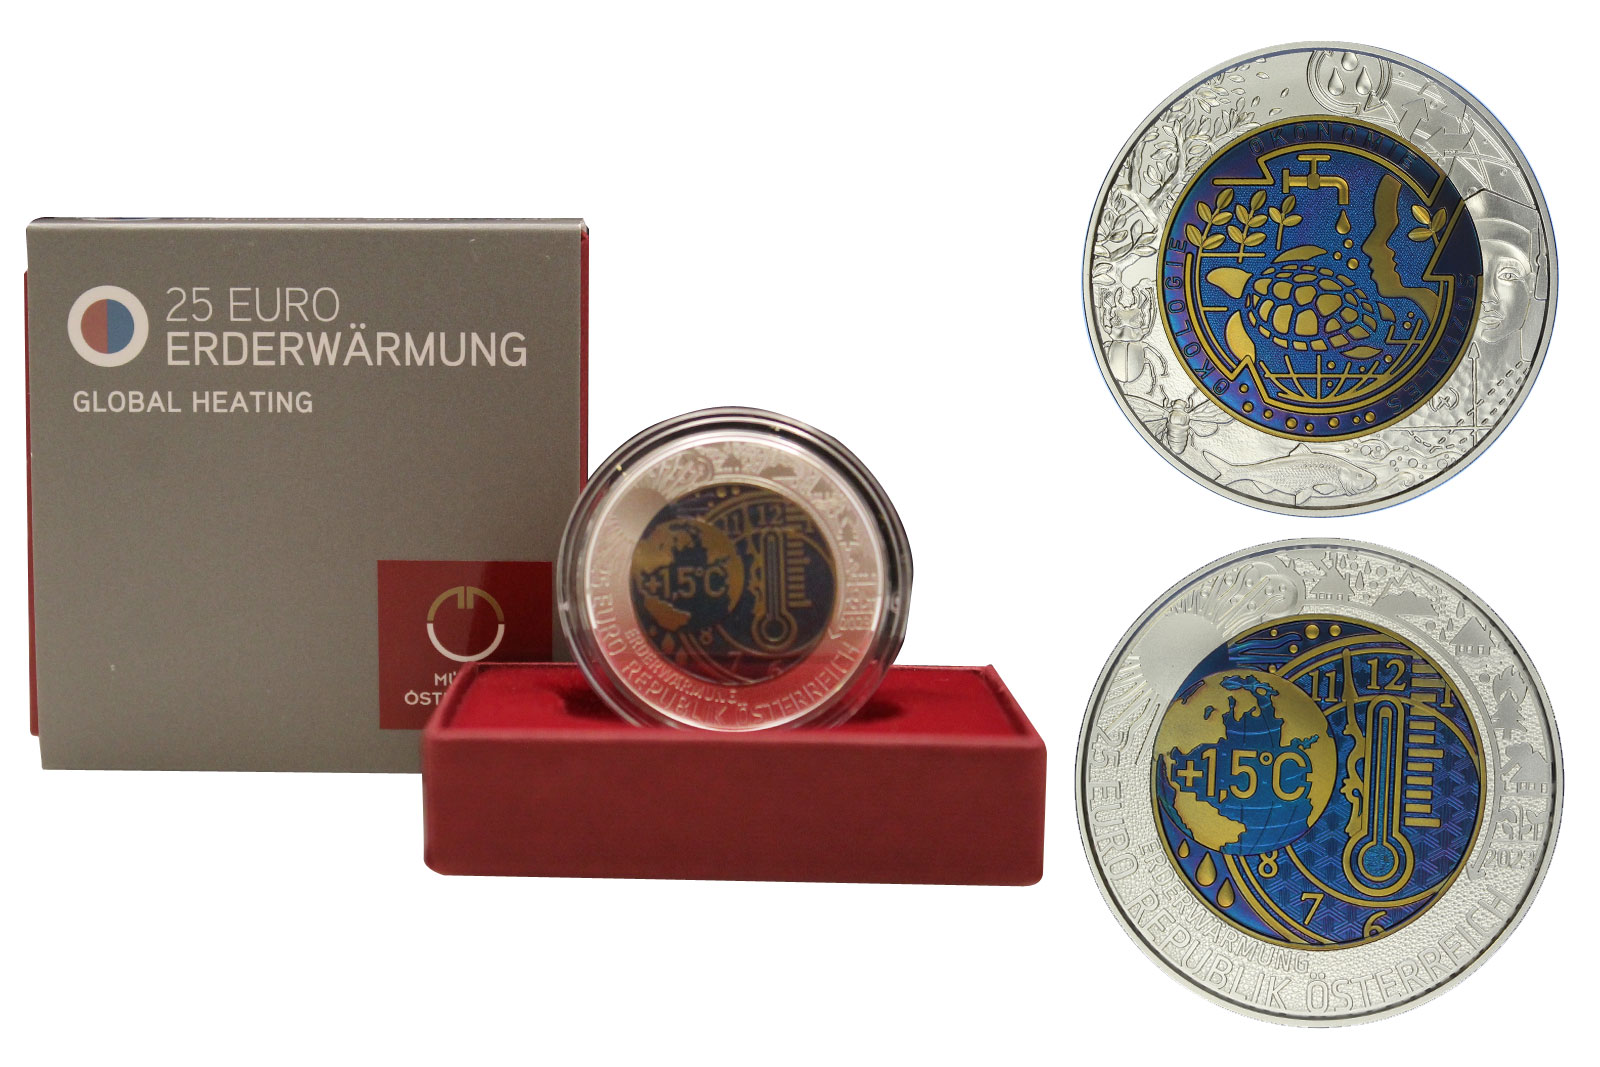 "Riscaldamento globale" - Moneta da 25 euro in argento 900/000 e niobio con dettagli colorati